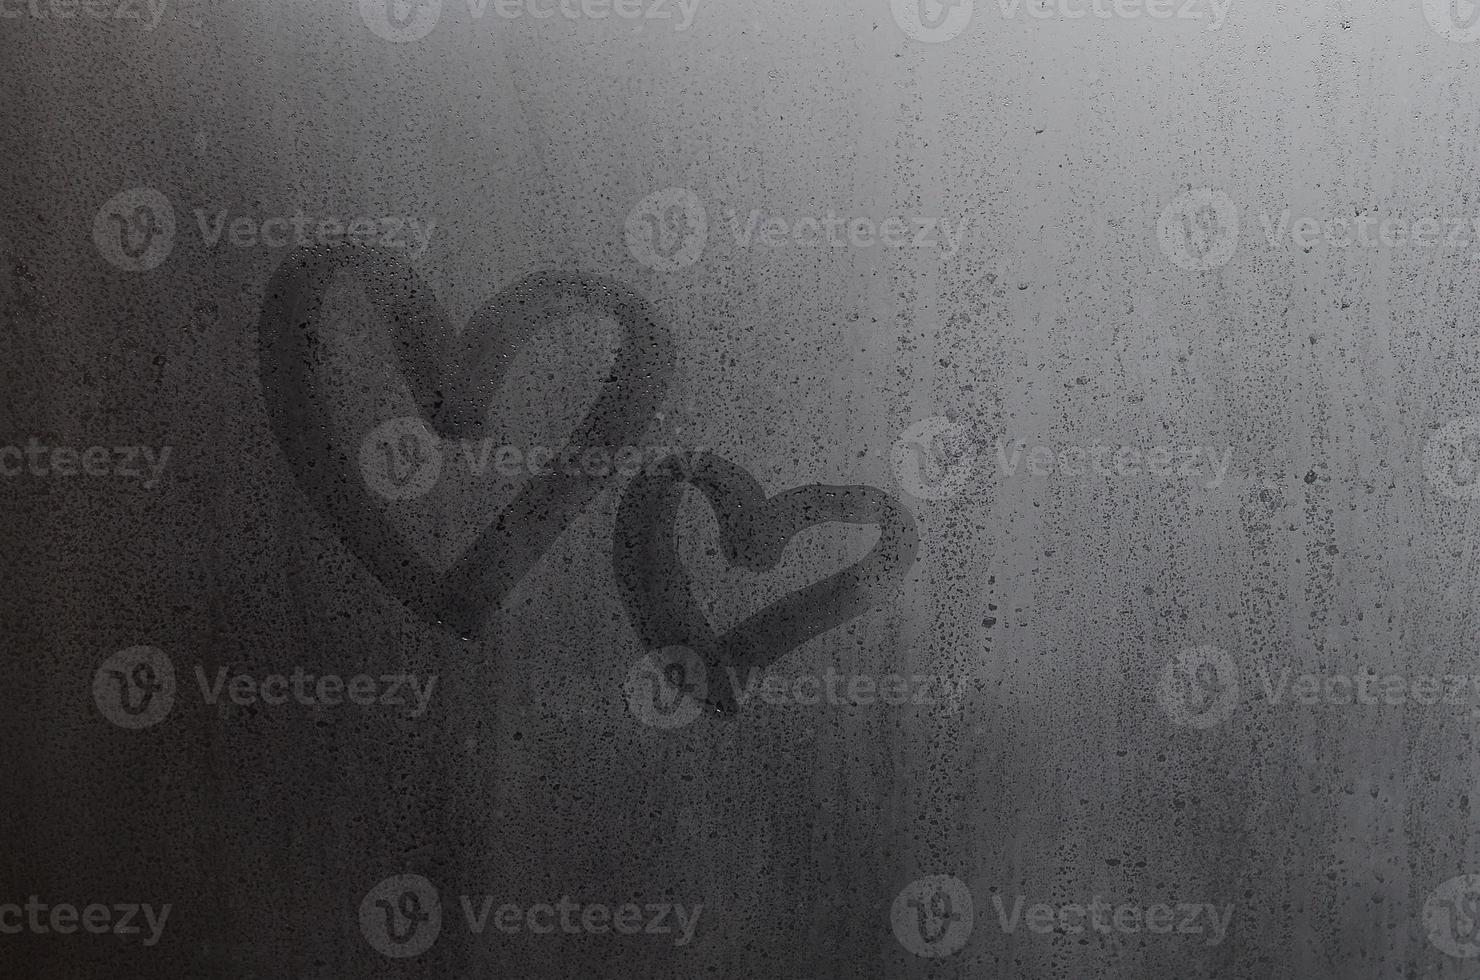 paar van abstract wazig liefde hart symbool getrokken door hand- Aan de nat venster glas met zonlicht achtergrond. sjabloon voor Valentijn dag ansichtkaarten foto